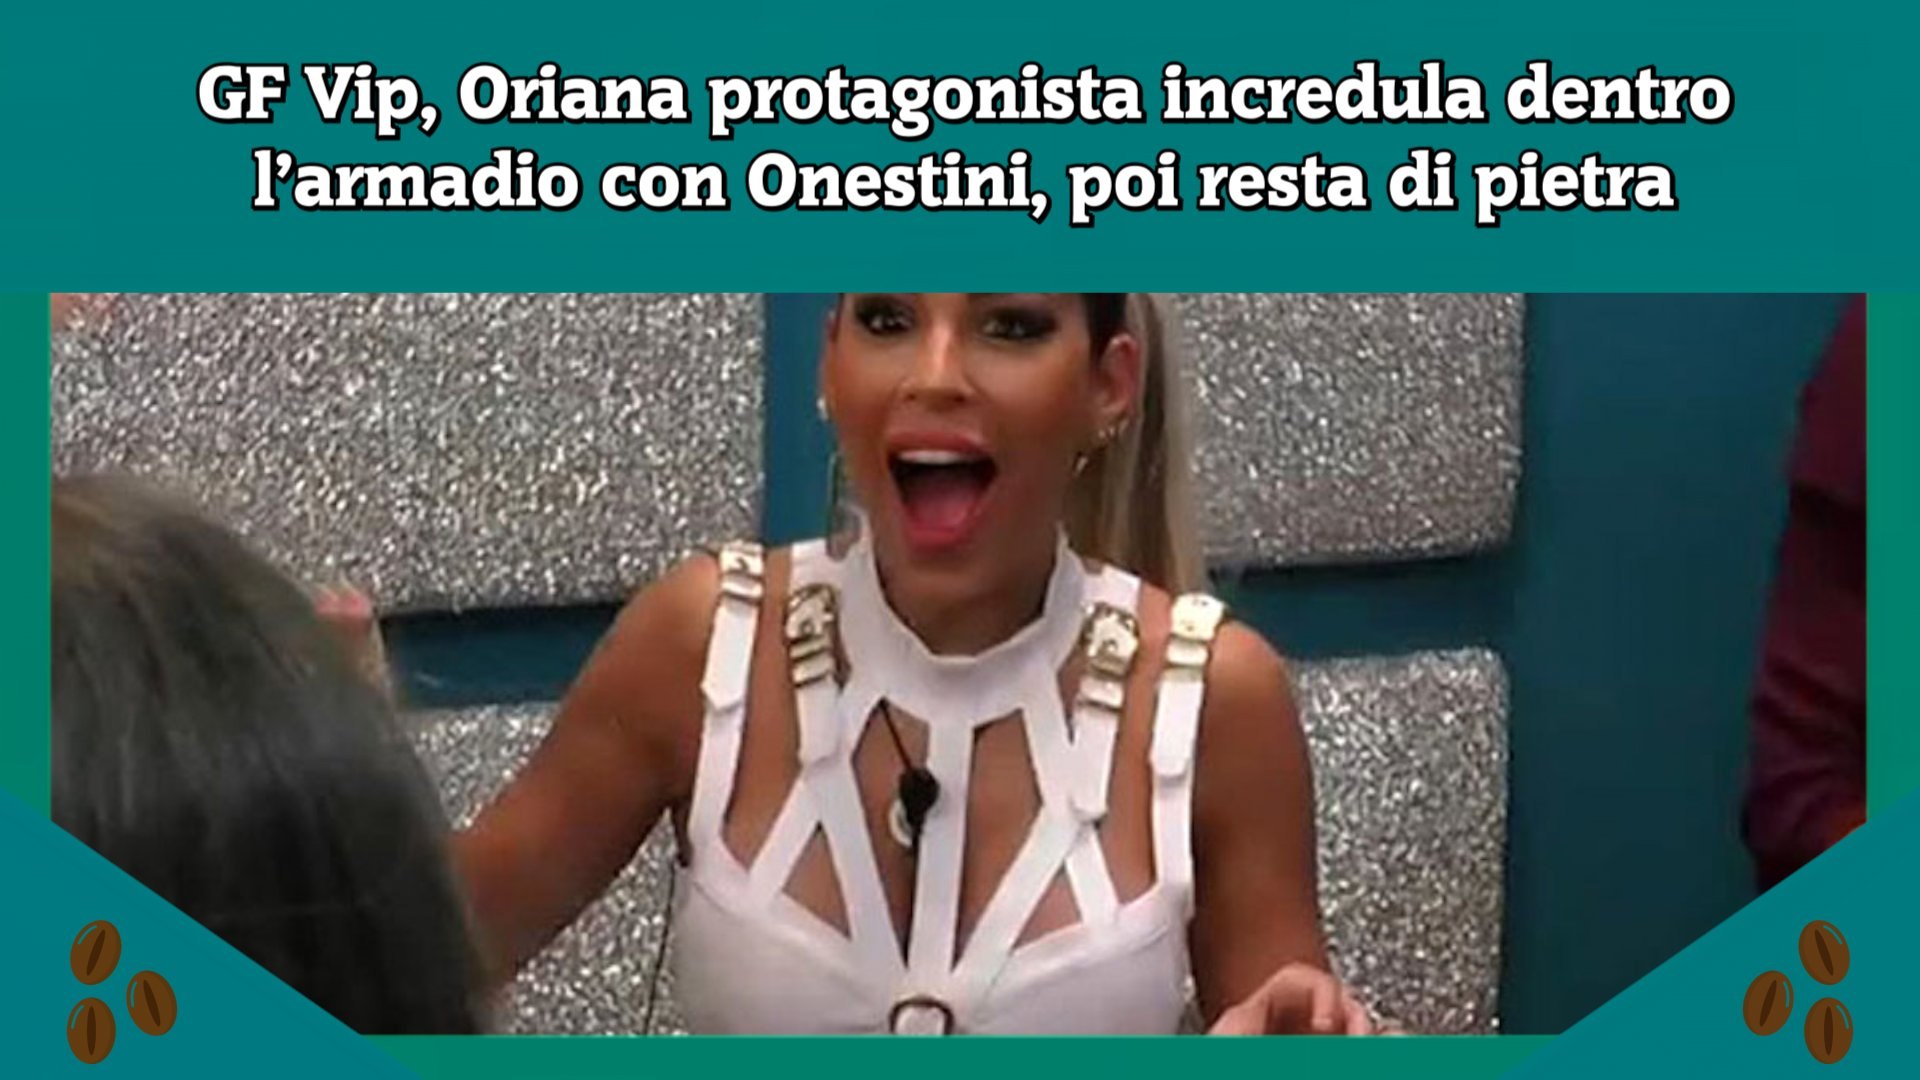 GF Vip, Oriana protagonista incredula dentro l'armadio con Onestini, poi  resta di pietra - Video Dailymotion